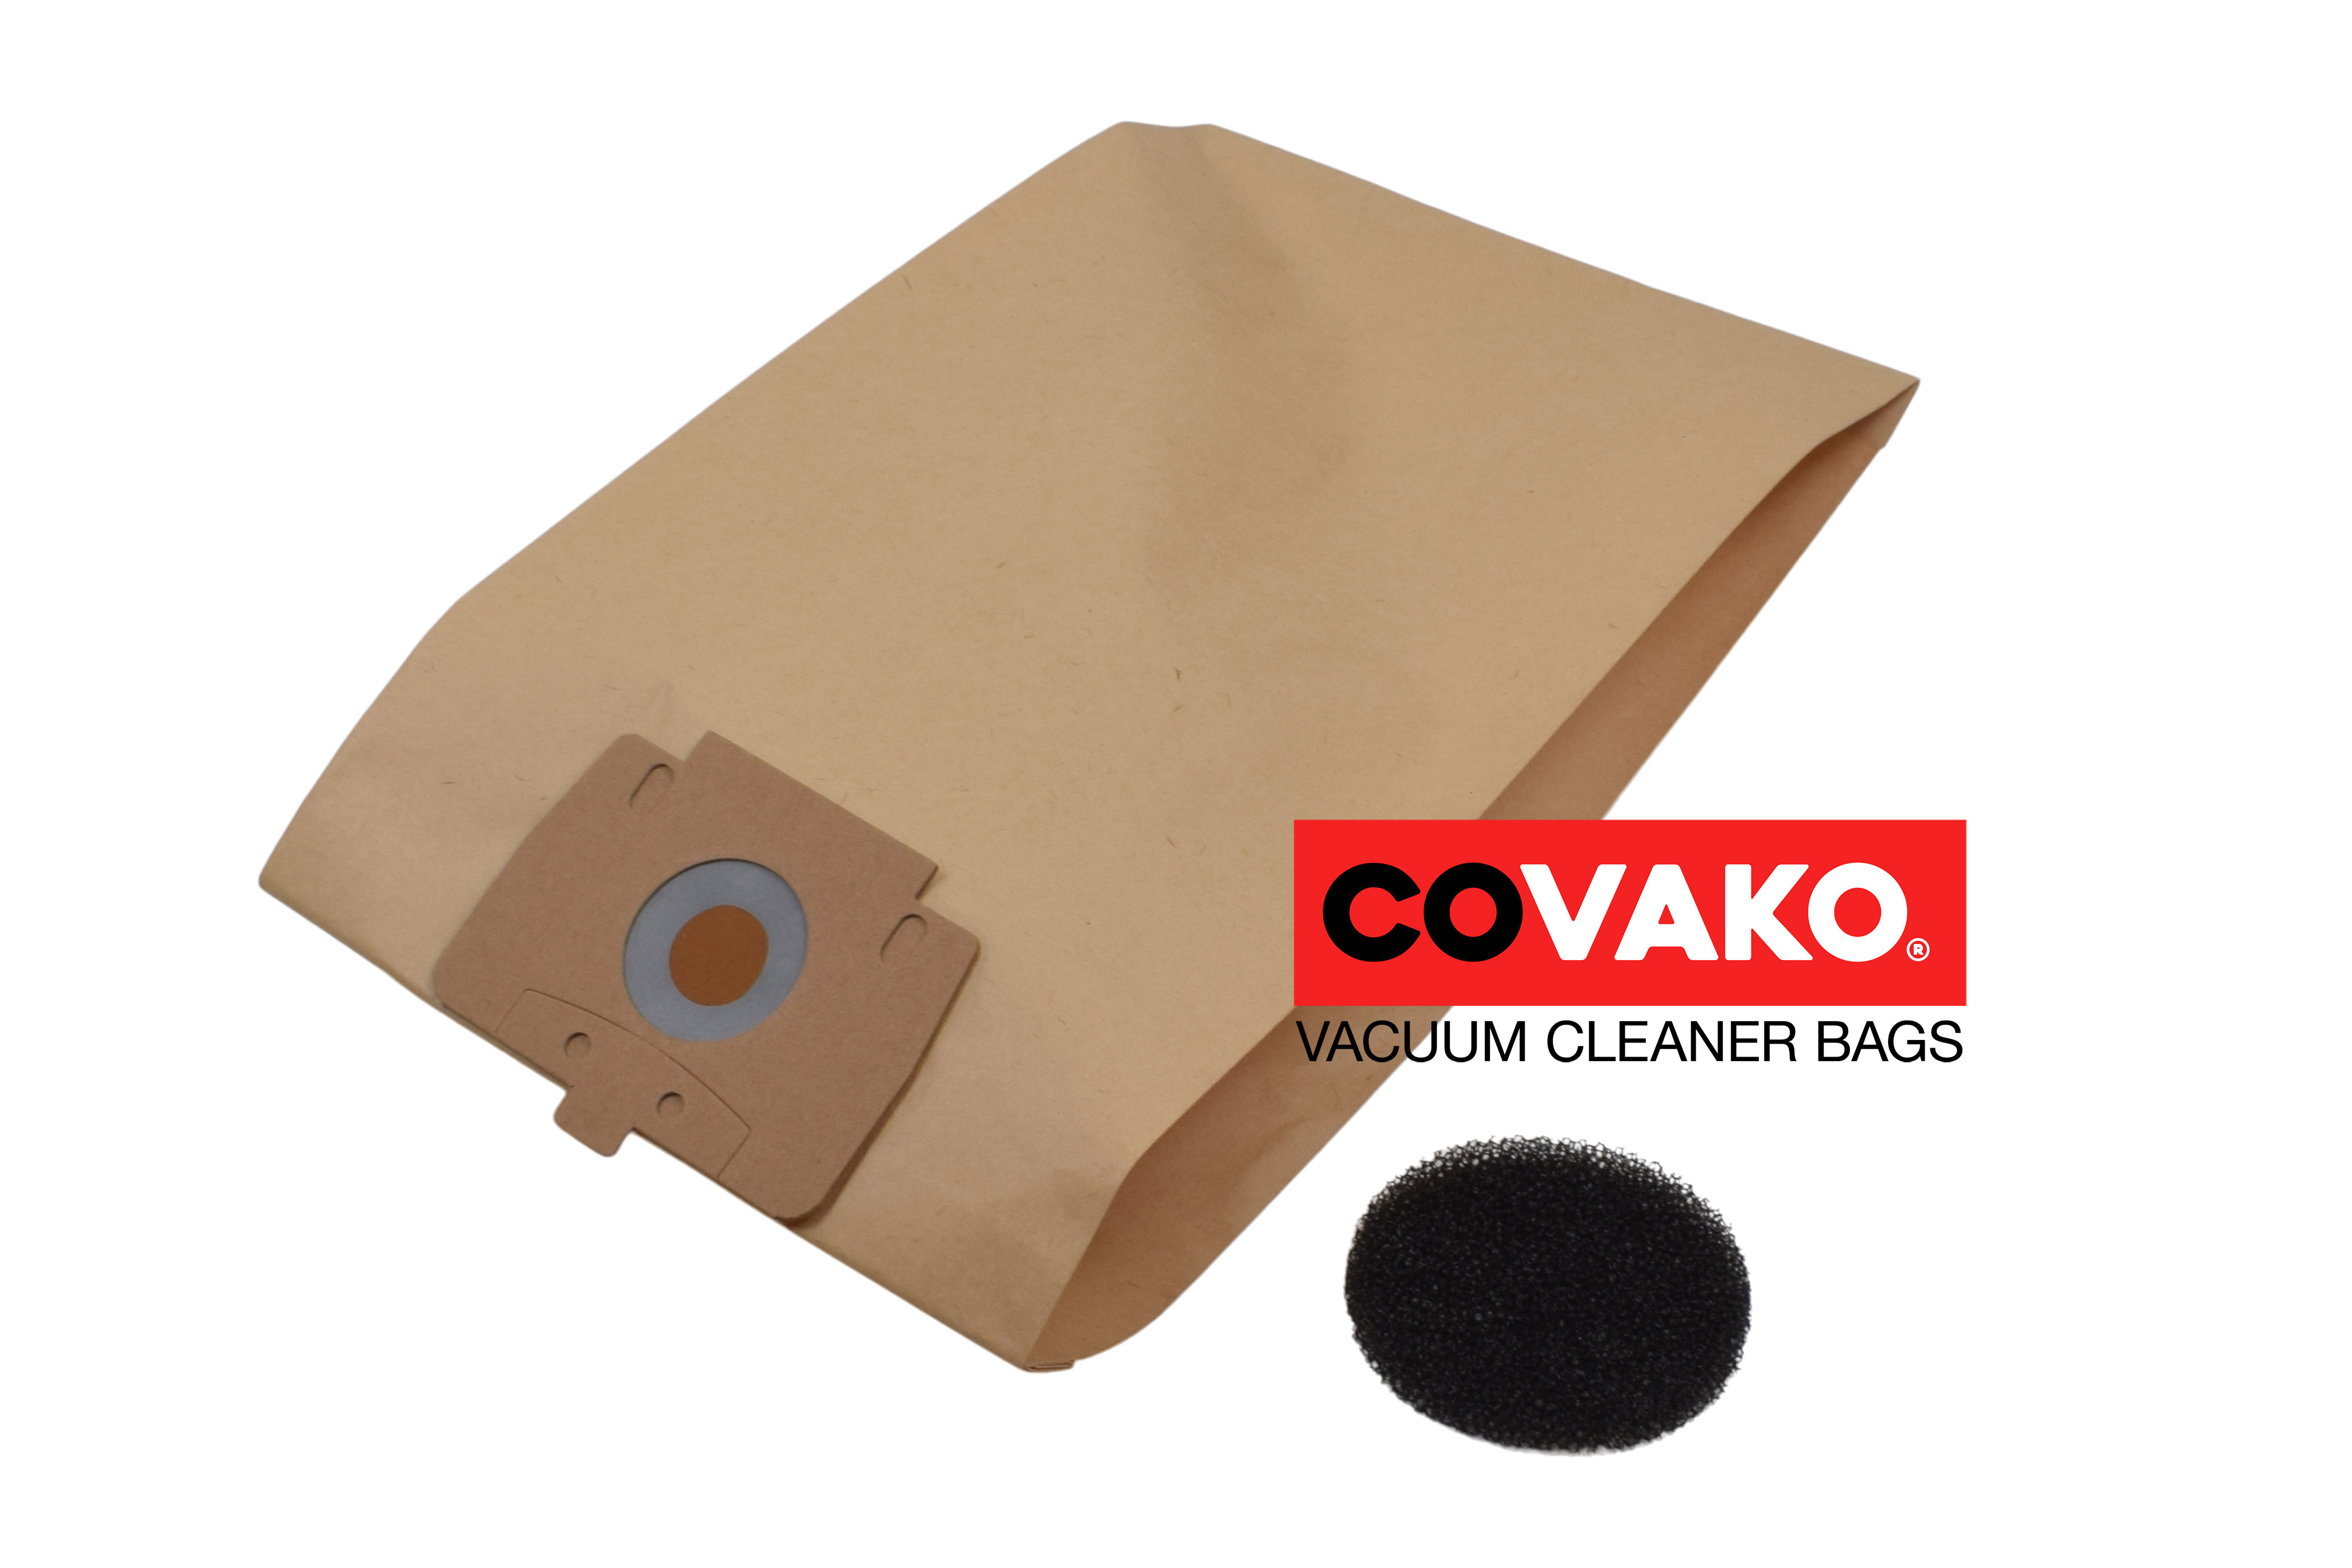 Columbus M 159 / Paper - Columbus vacuum cleaner bags